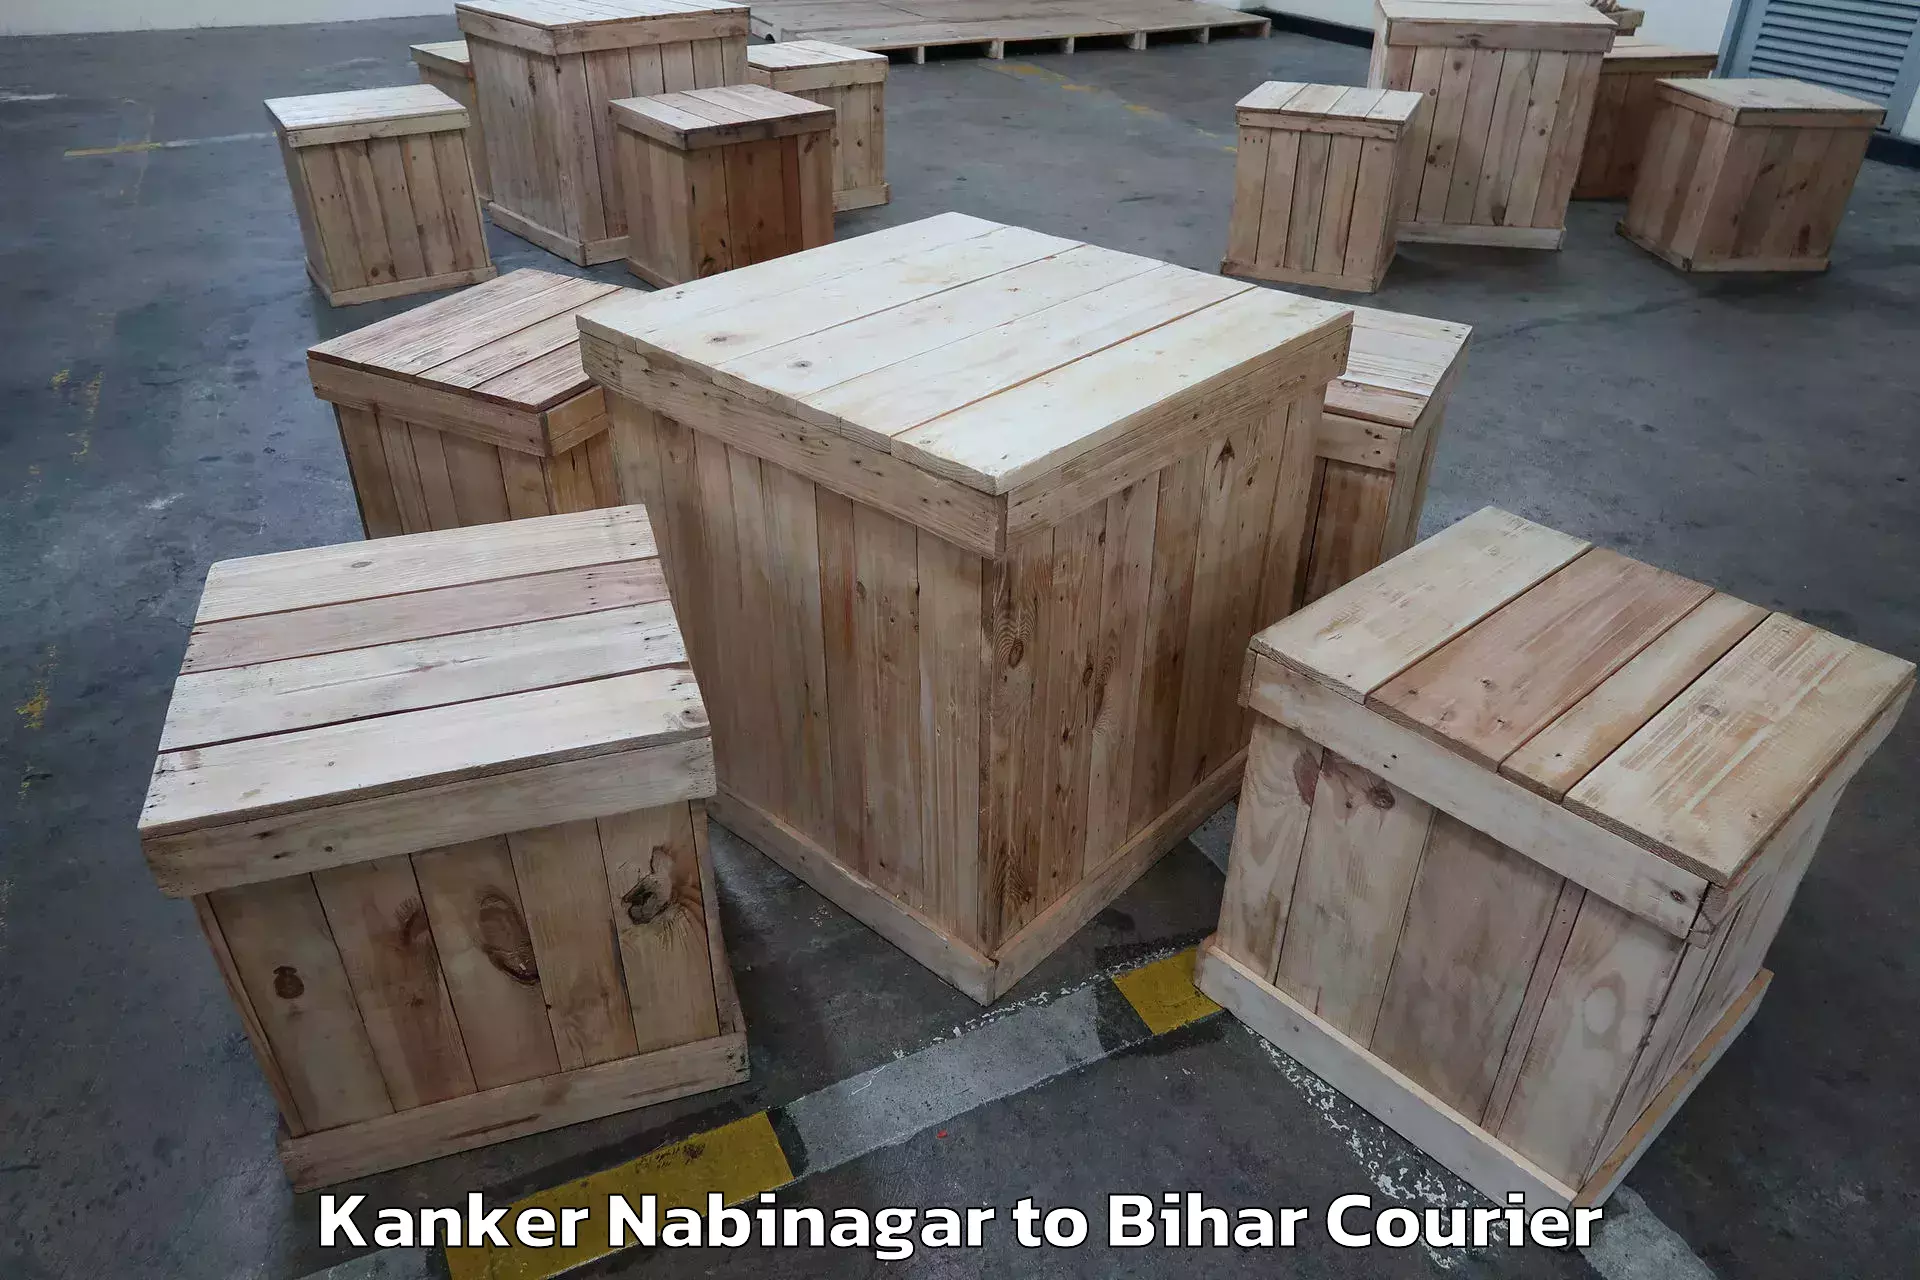 Furniture delivery service Kanker Nabinagar to Bikramganj